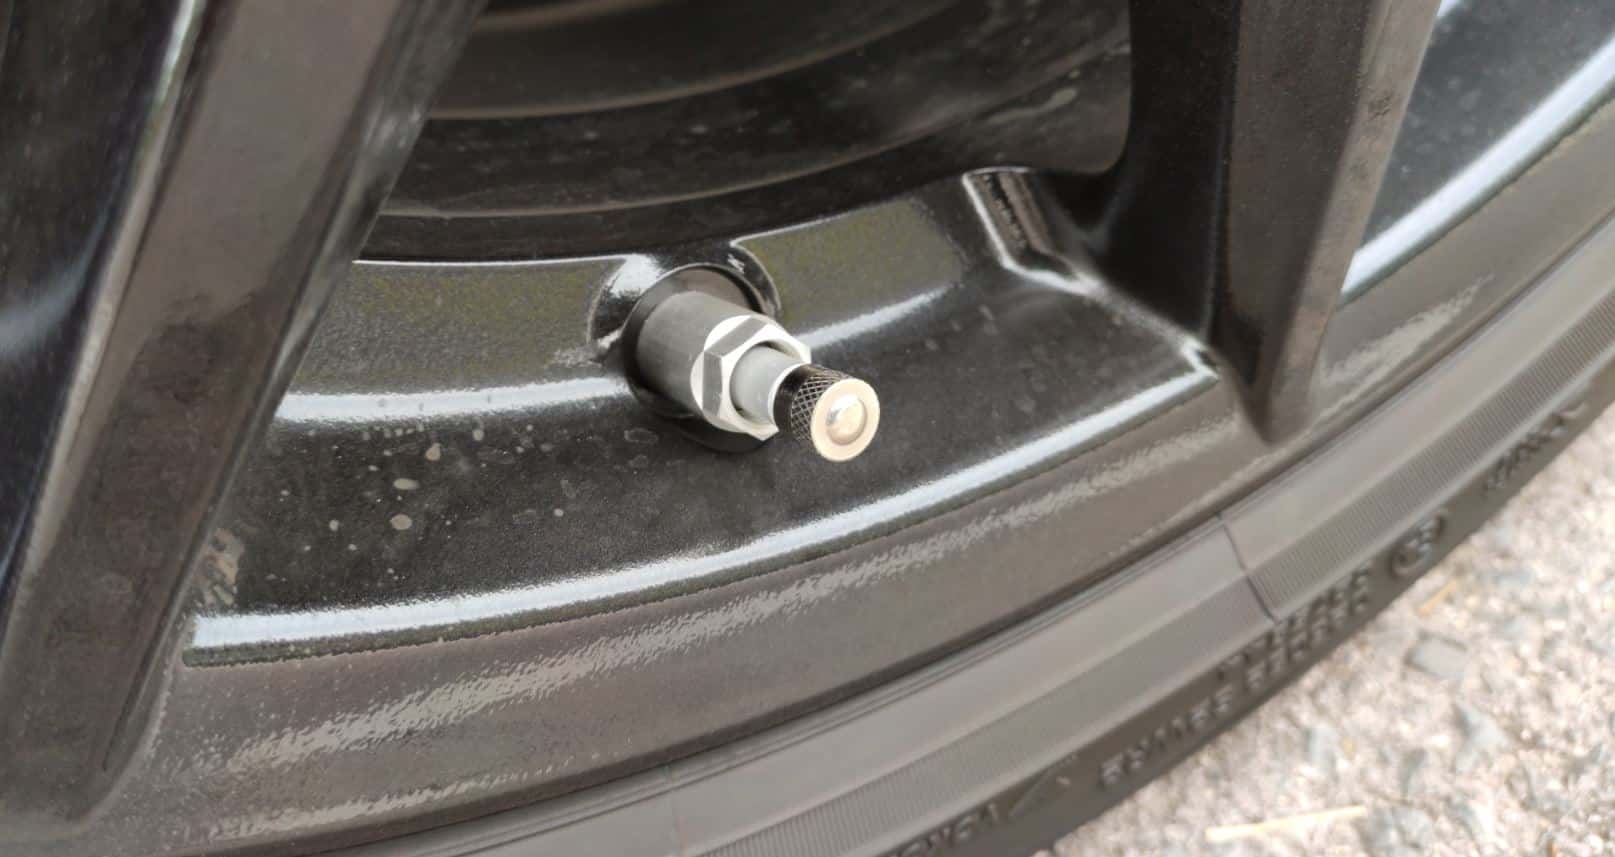 Por qué desaparecieron los tapones metálicos las ruedas?